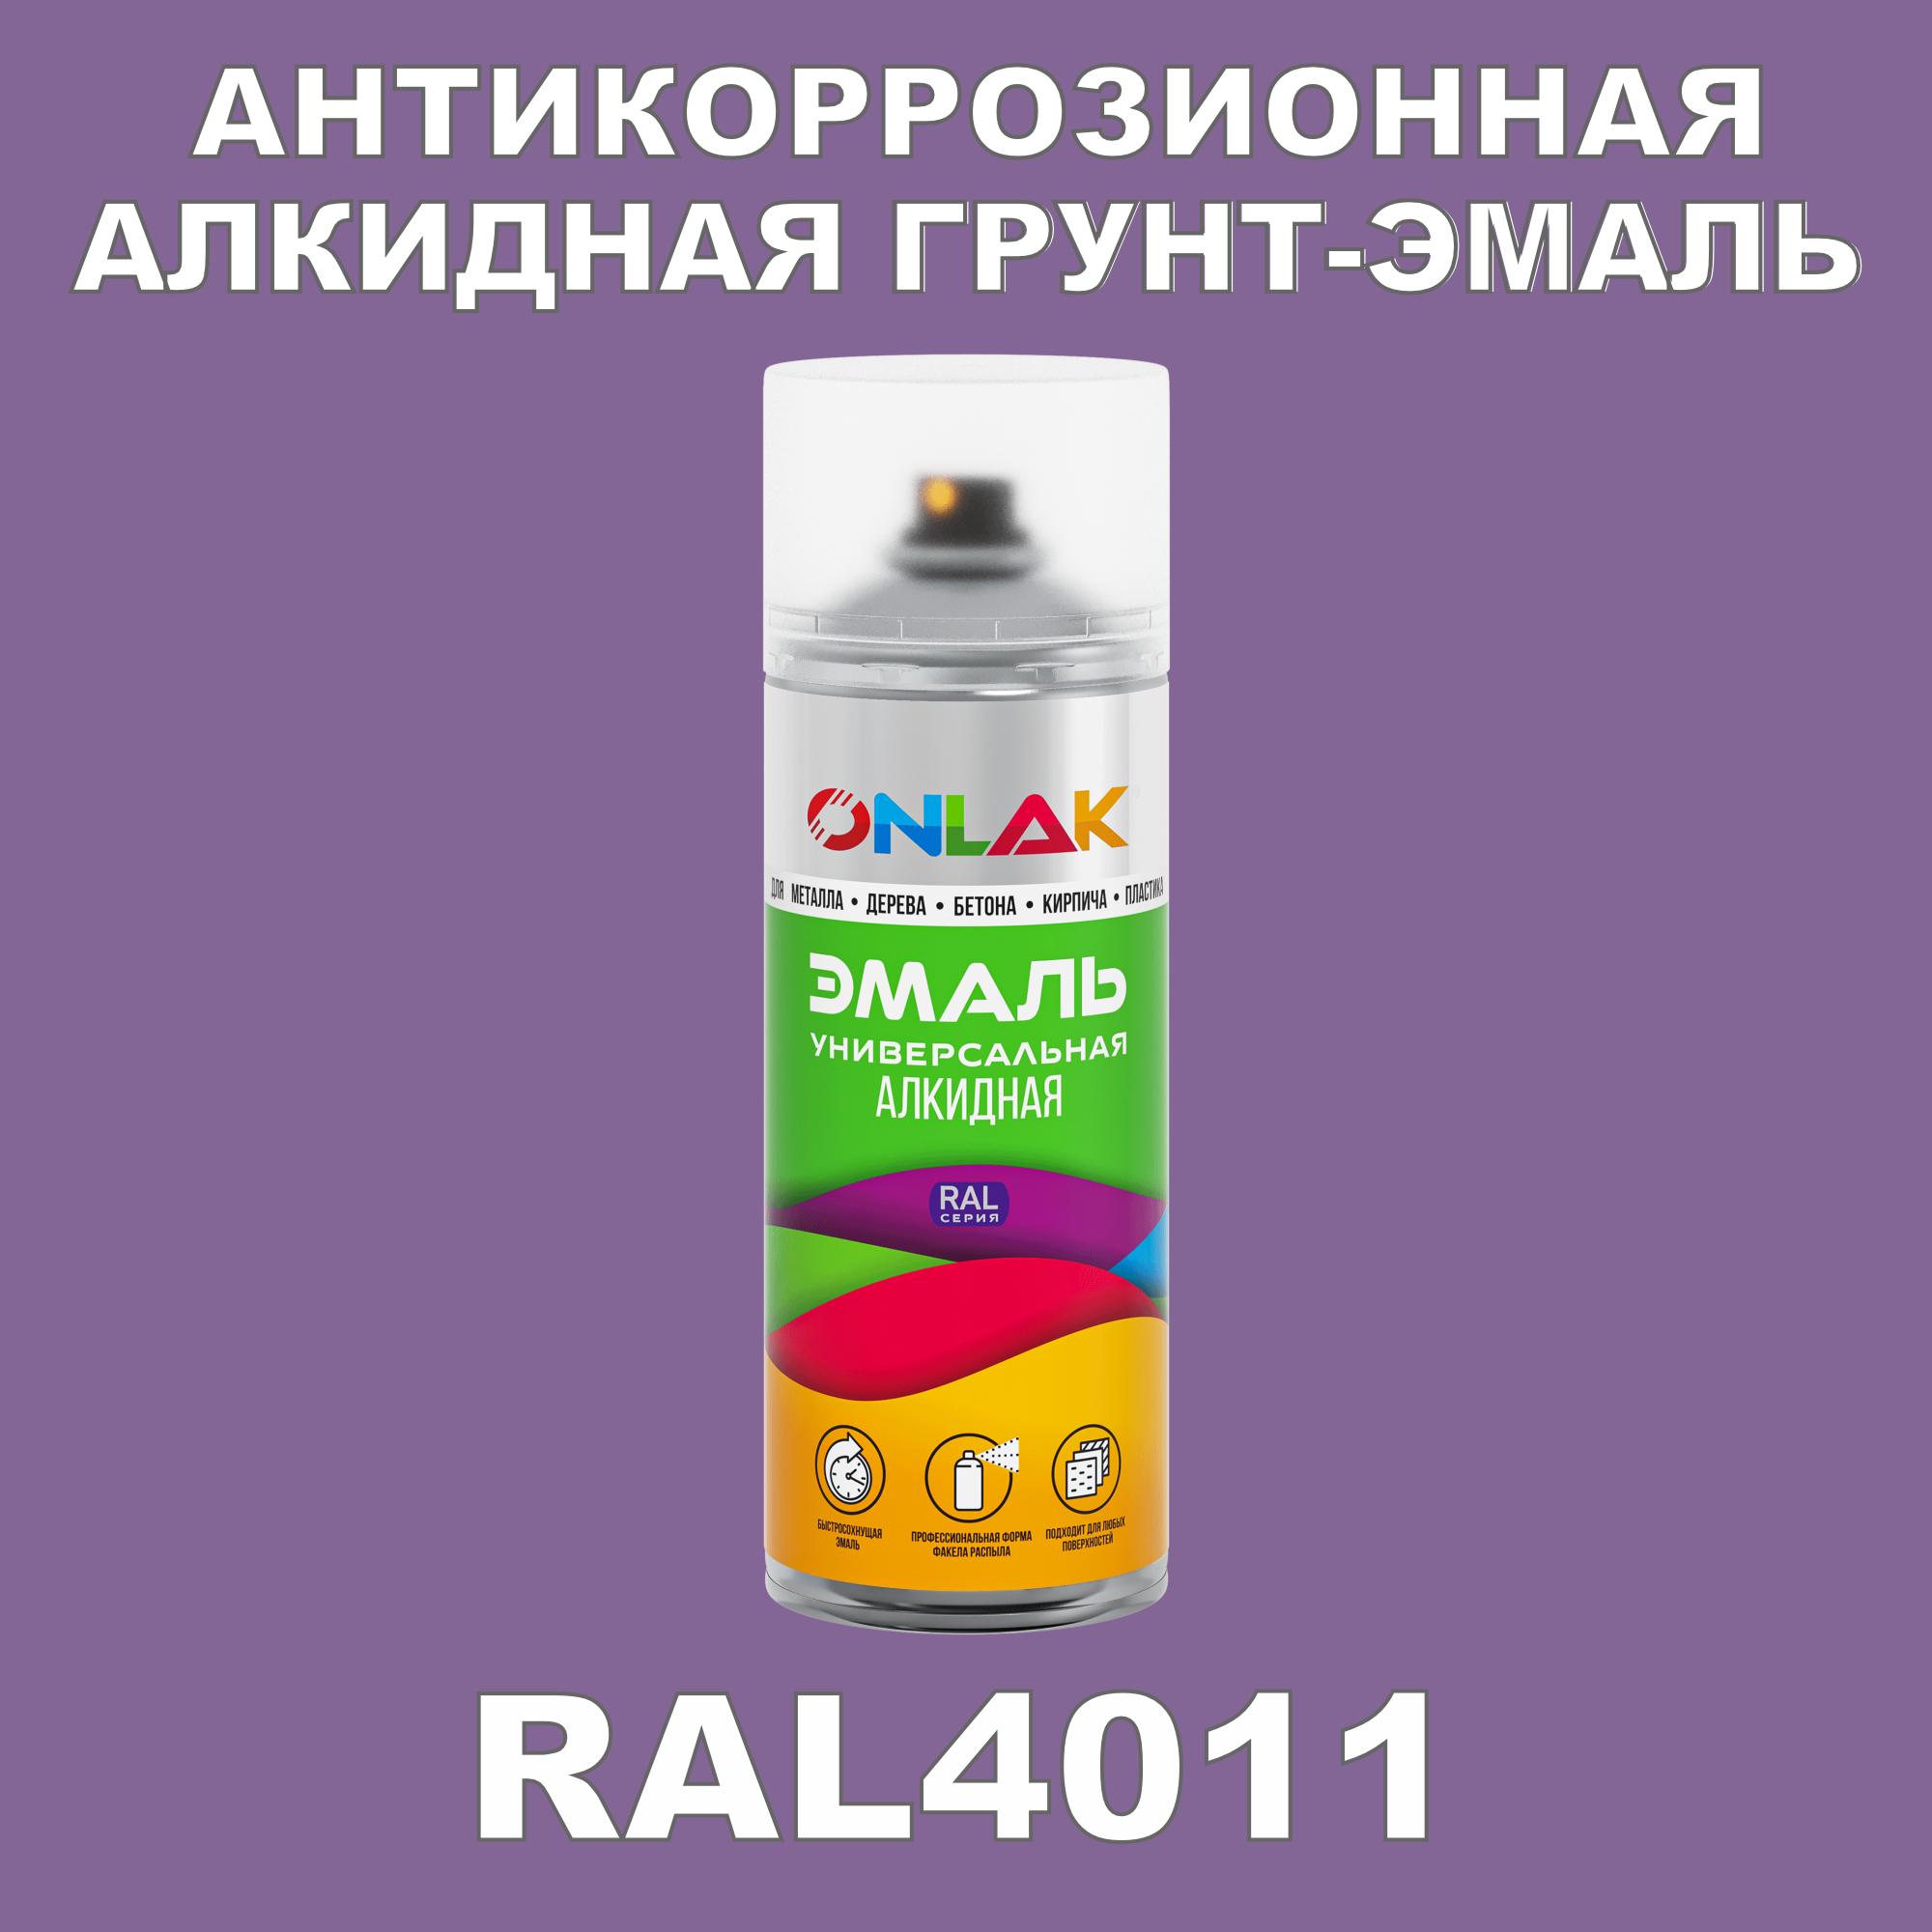 Антикоррозионная грунт-эмаль ONLAK RAL 4011,фиолетовый,550 мл антикоррозионная грунт эмаль onlak ral 4012 фиолетовый 715 мл